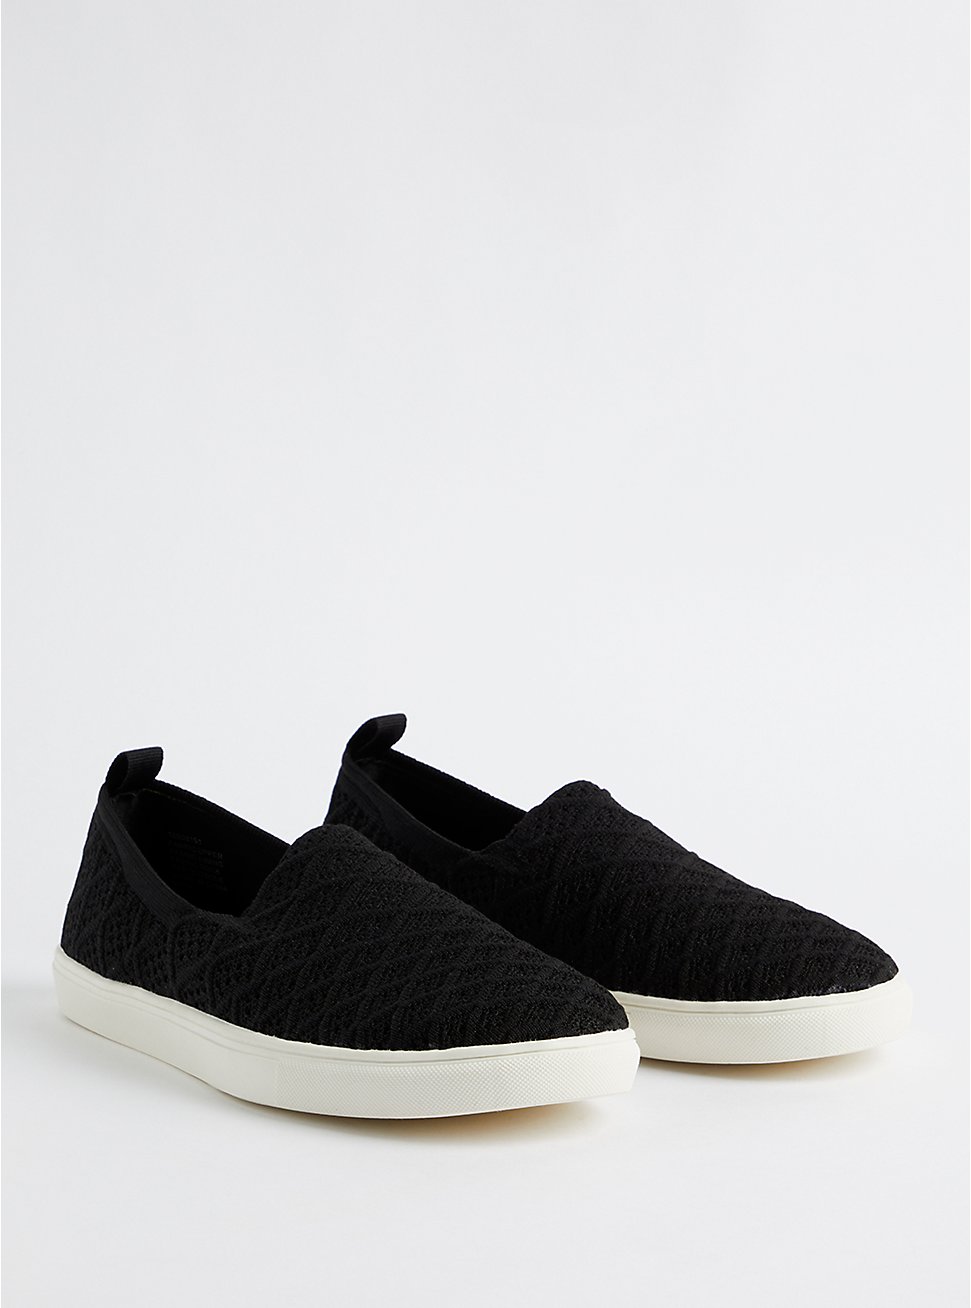 Plus Size Sneaker - Stretch Knit Black (WW), BLACK, hi-res